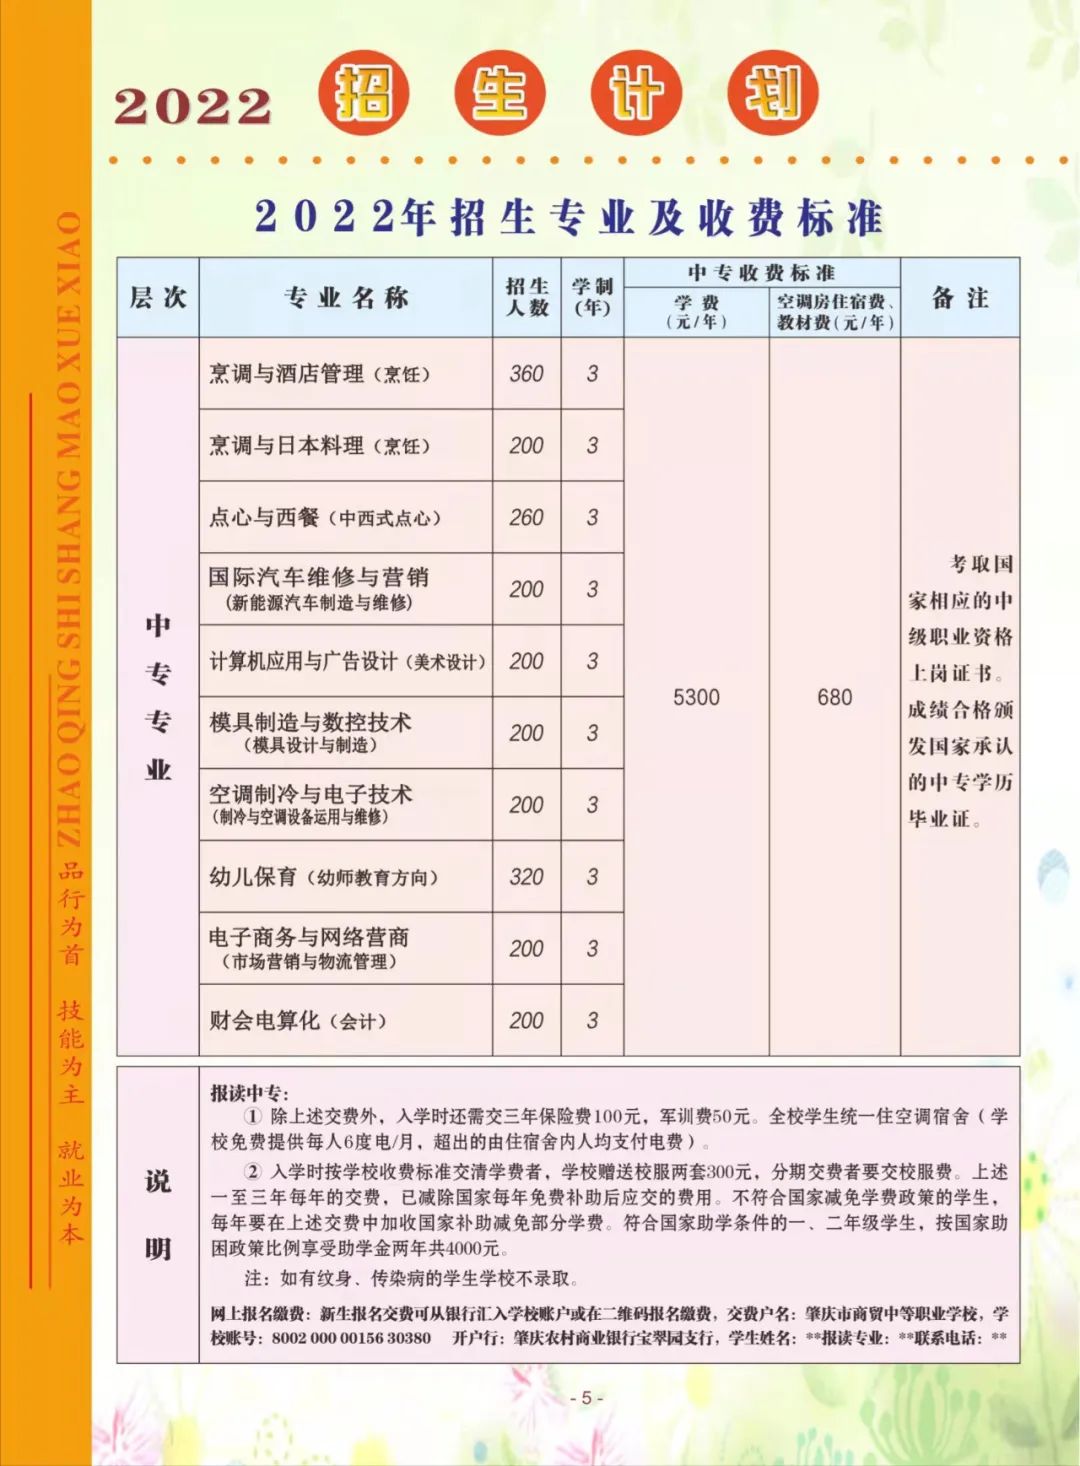 肇庆市商贸中等职业学校2022年招生简章